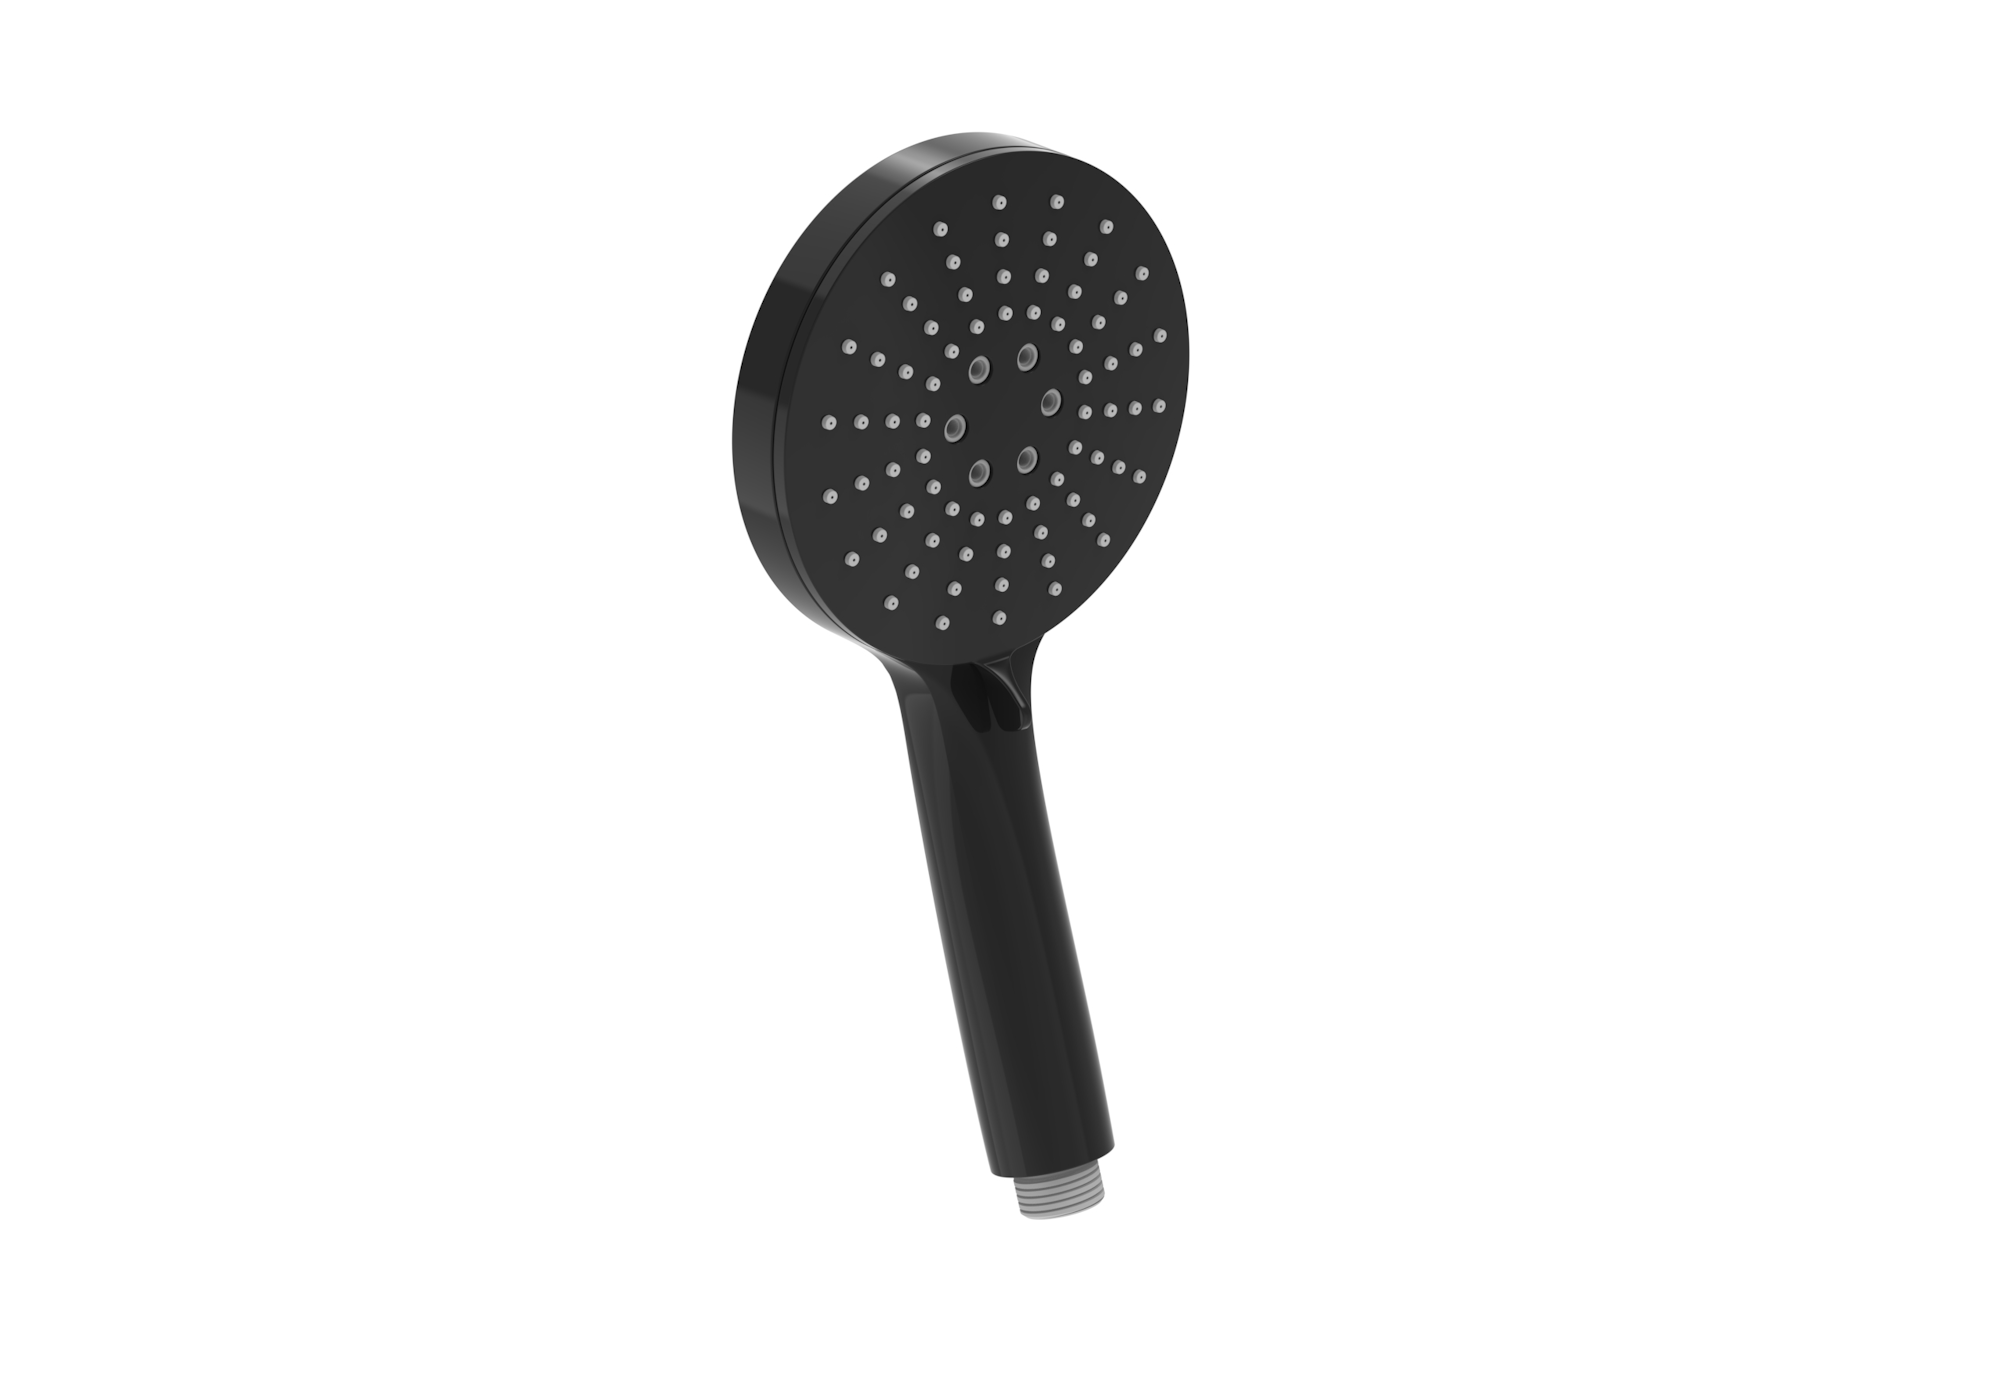 COS 3 function shower handset - Satin Black